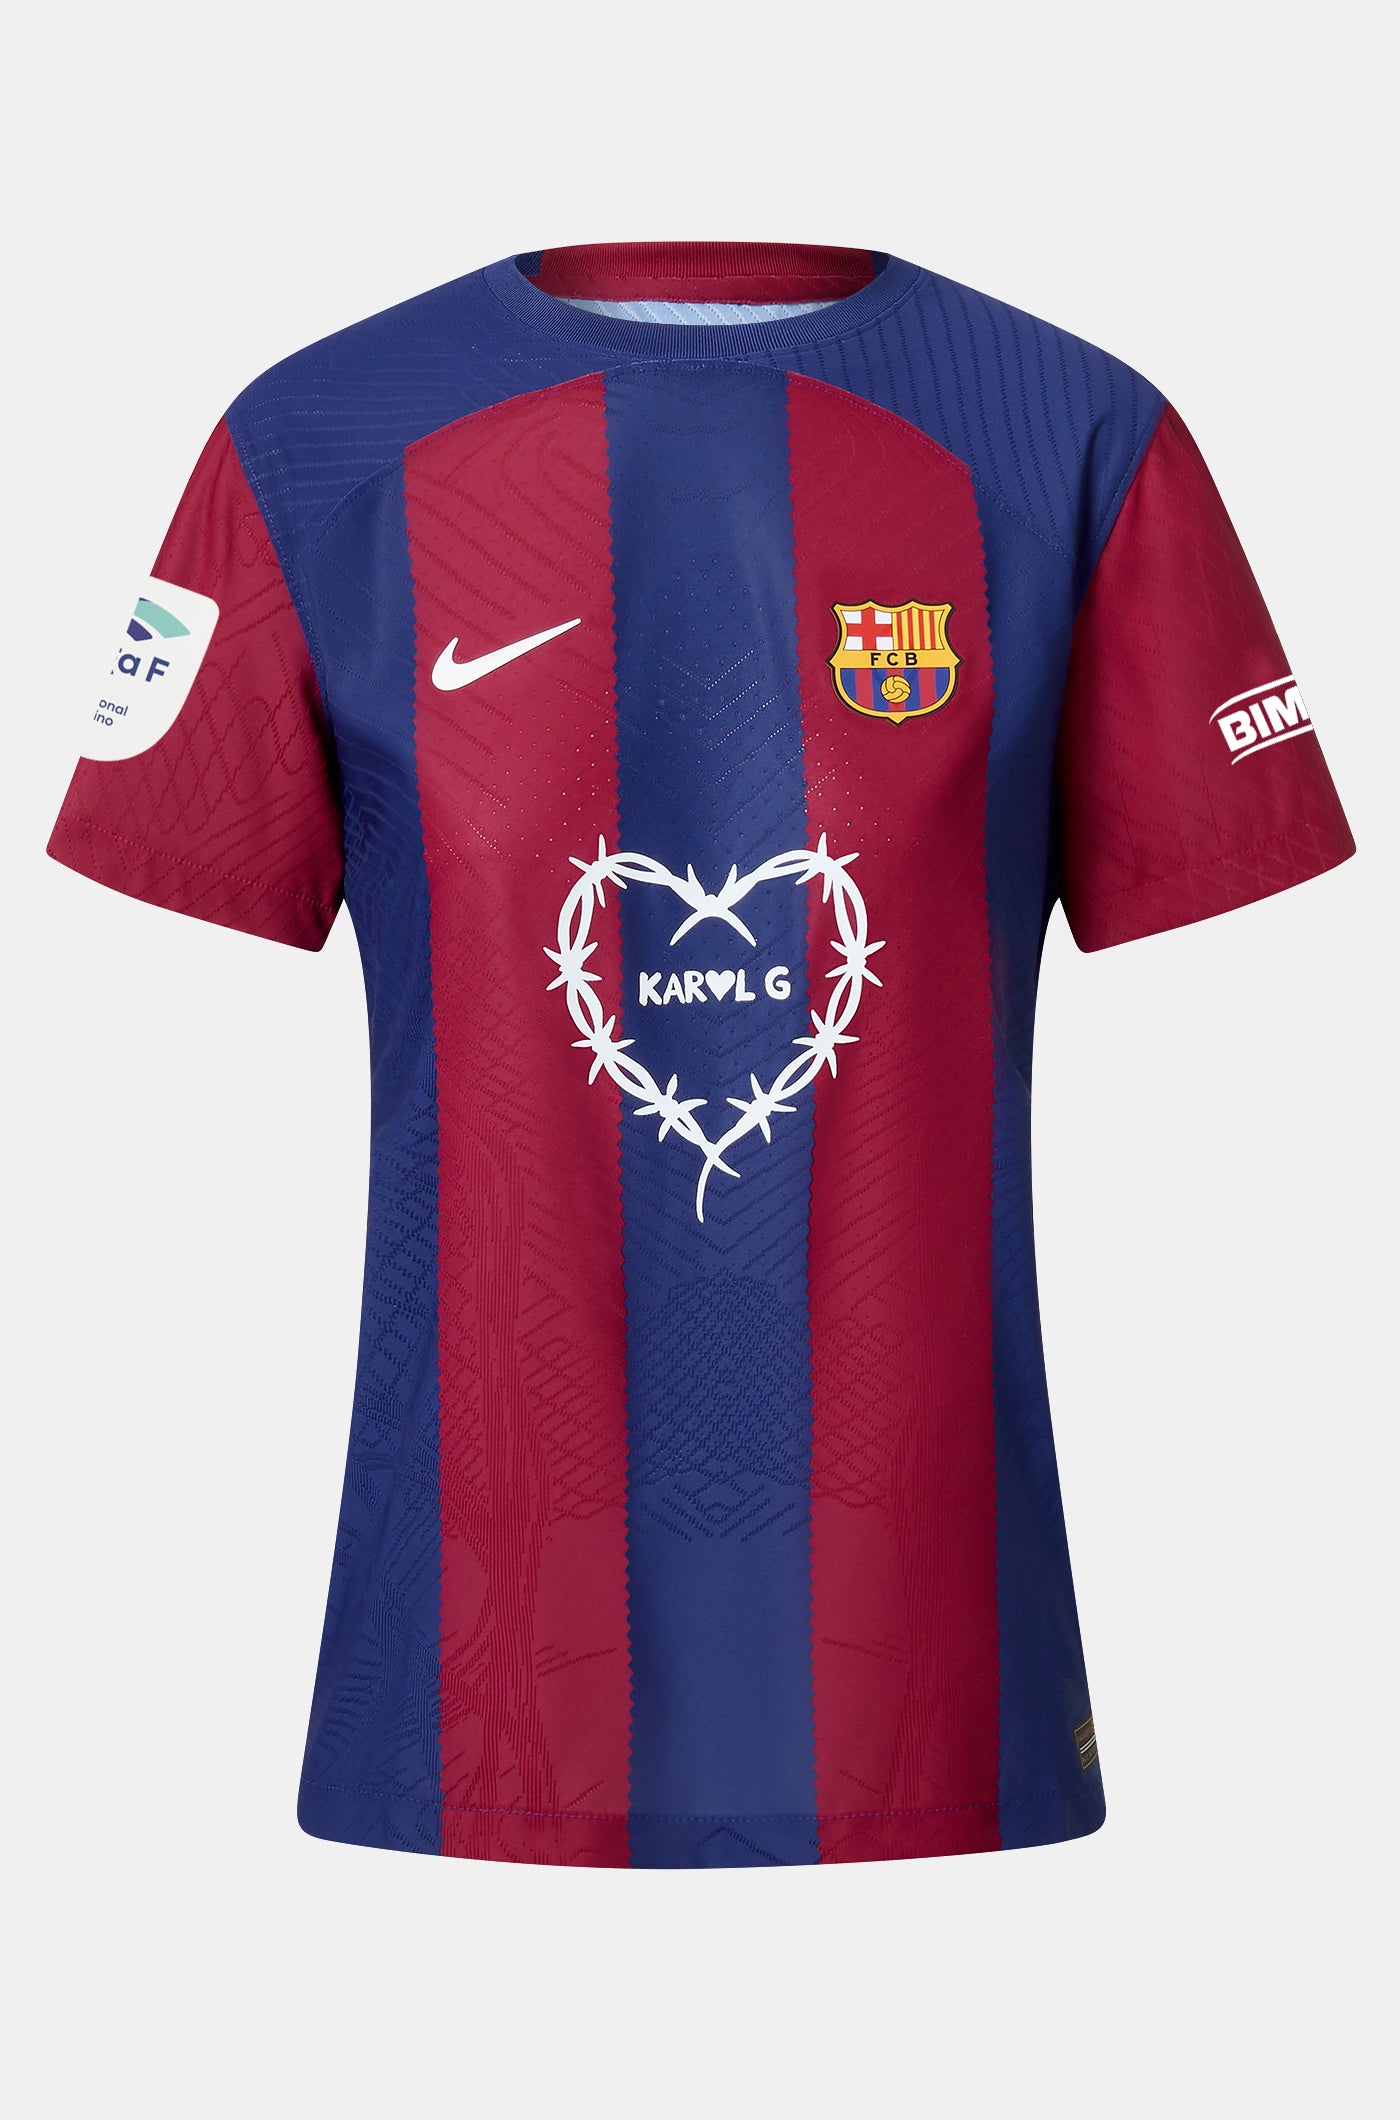 FIRMADA | Camiseta femenina Edición Limitada FC BARCELONA X KAROL G firmada por el equipo titular que disputó el Clásico y el equipo femenino titular del FC Barcelona – Villarreal